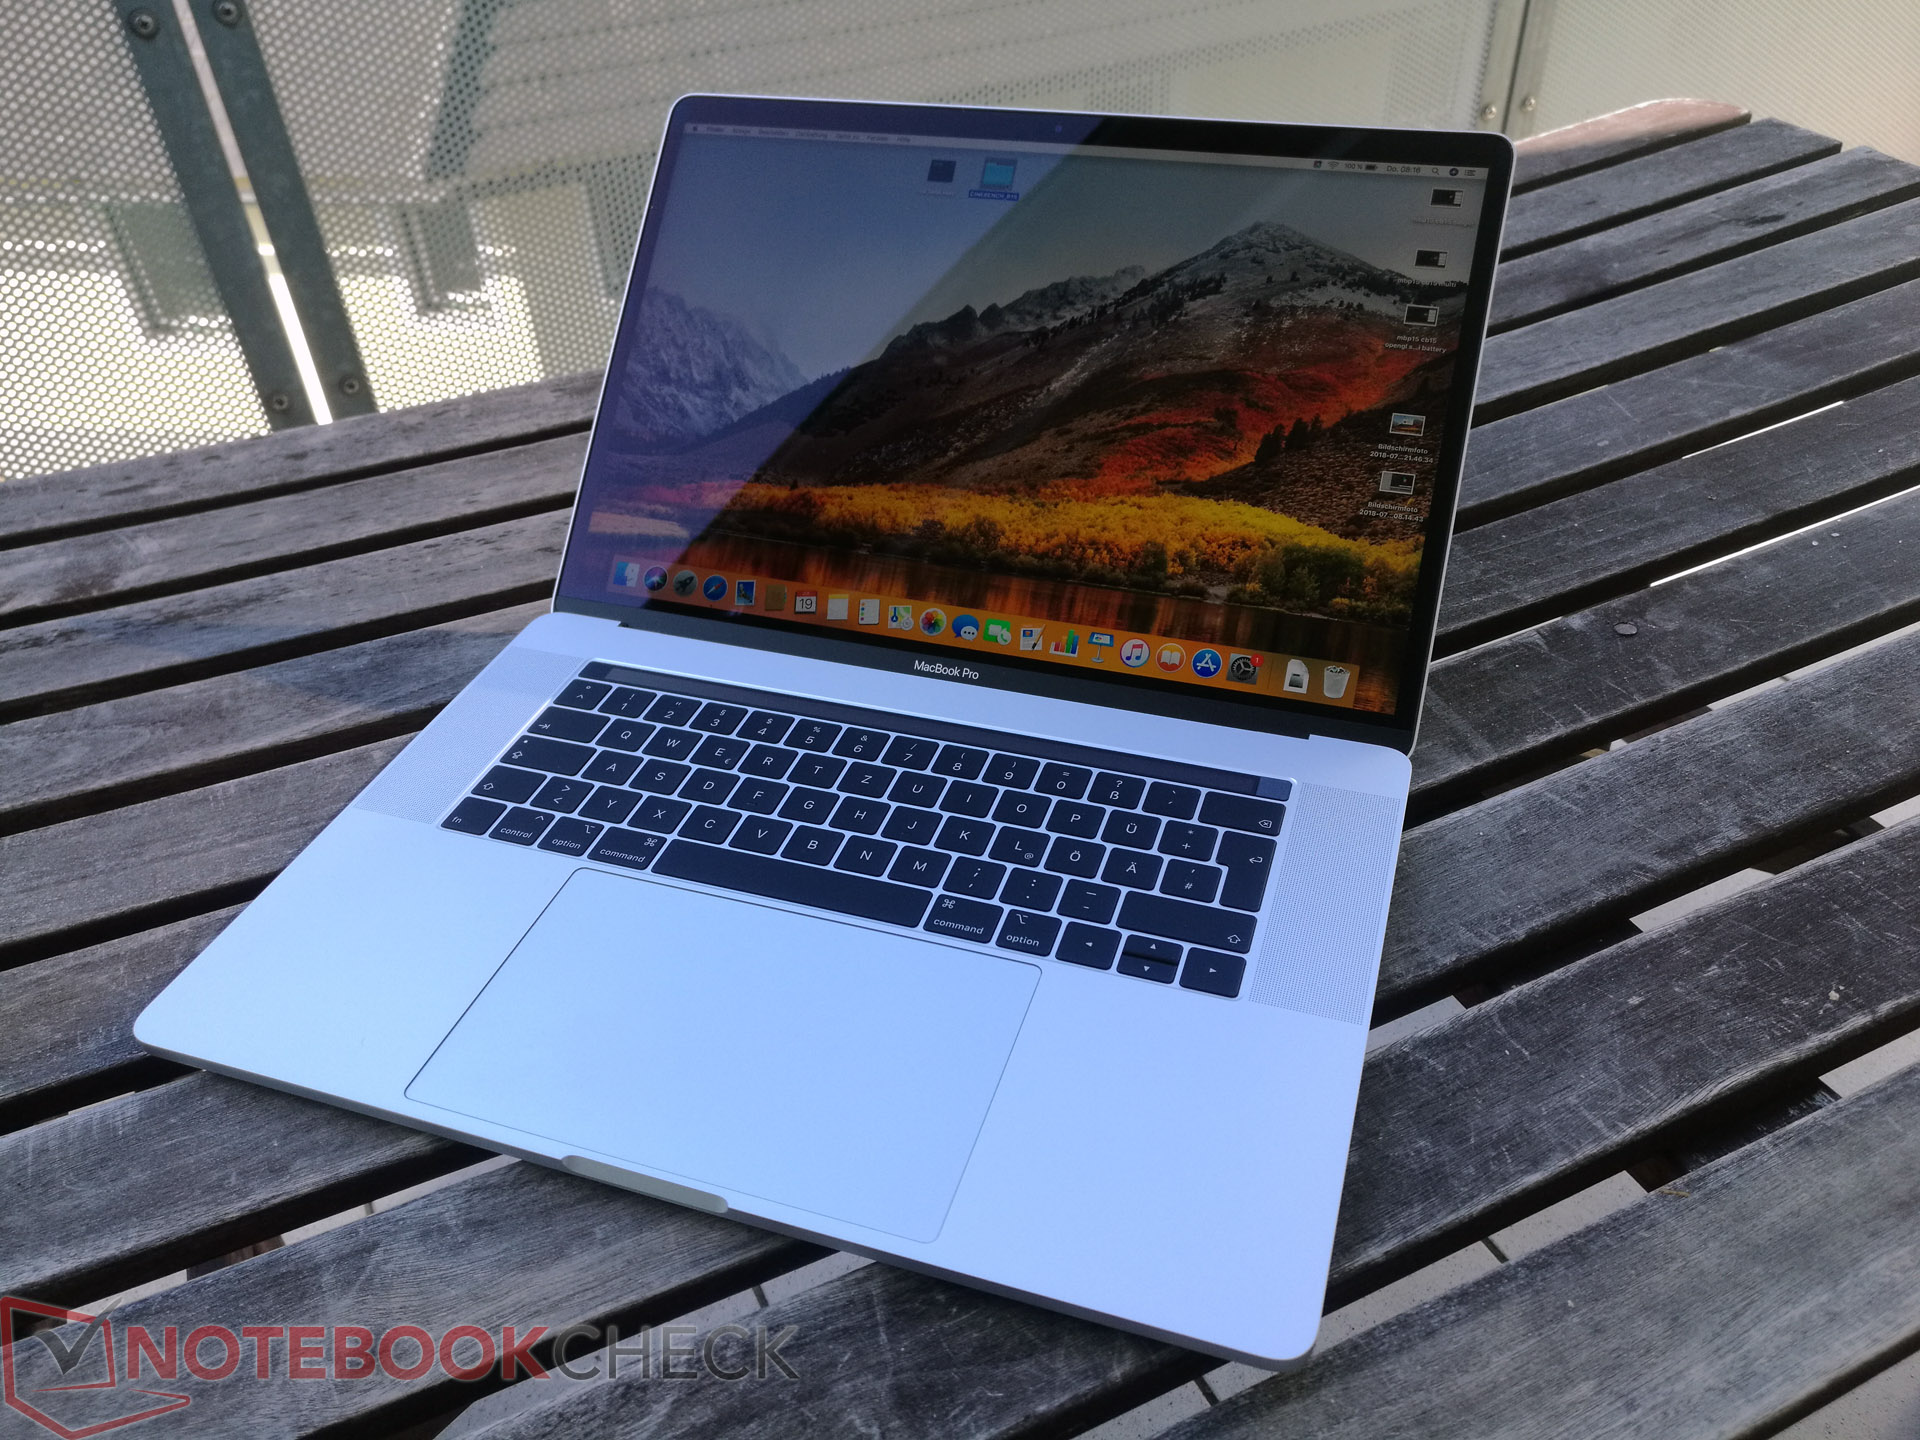 Apple MacBook Pro 15 2018 (2.6 GHz, 560X) Laptop Review